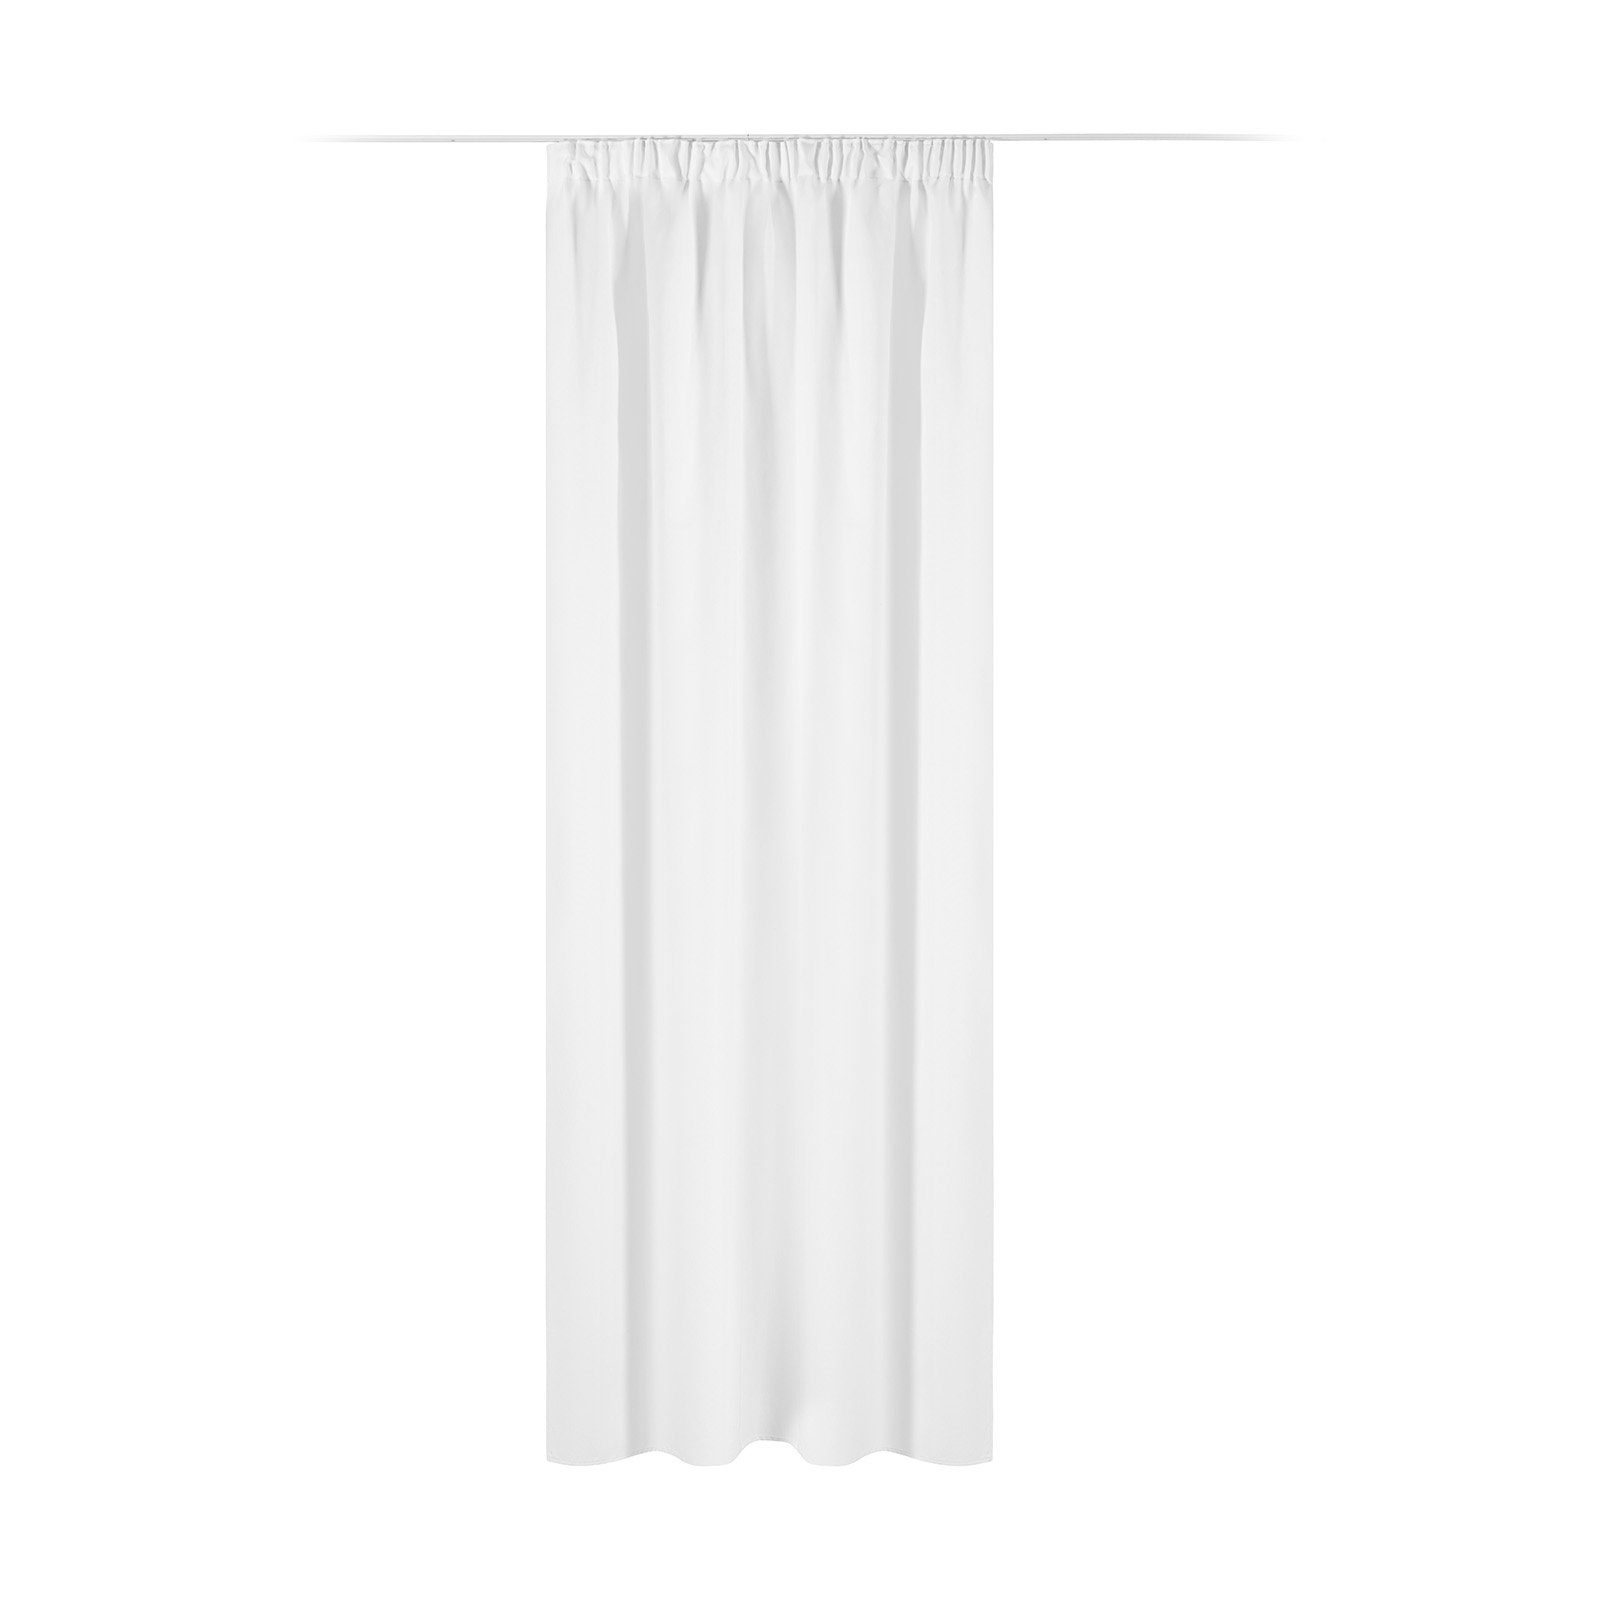 Vorhang Blickdichter Vorhang 140x245cm mit Kräuselband, Weiß JEMIDI